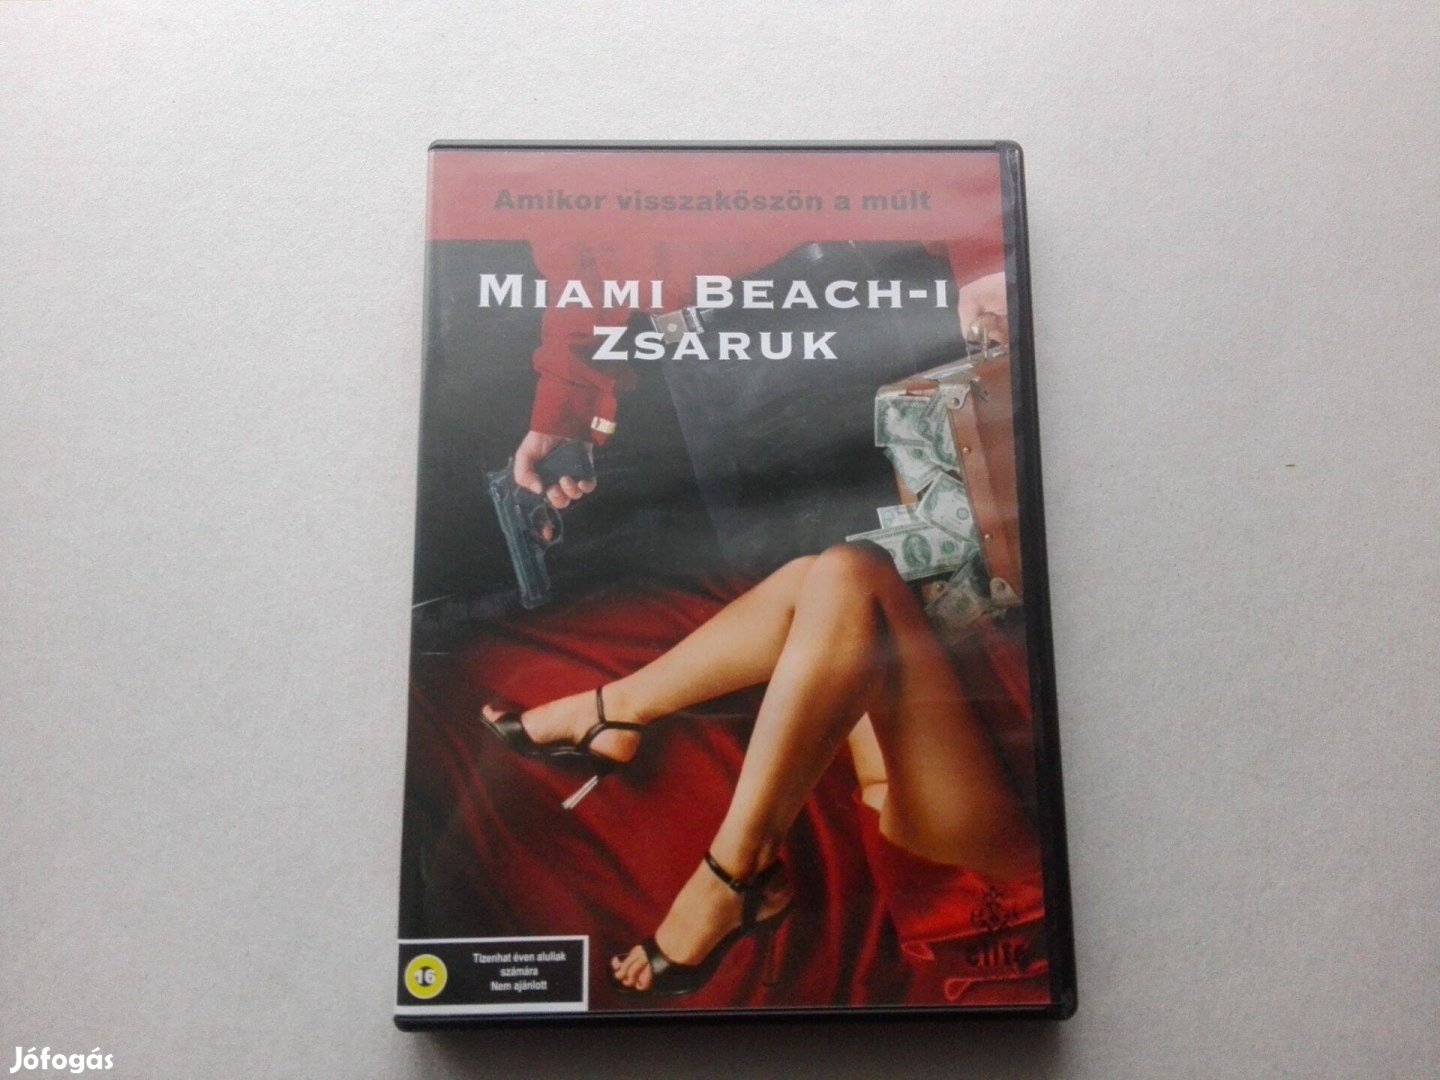 Miami Beach-i zsaruk című új, eredeti DVD film (magyar)eladó !